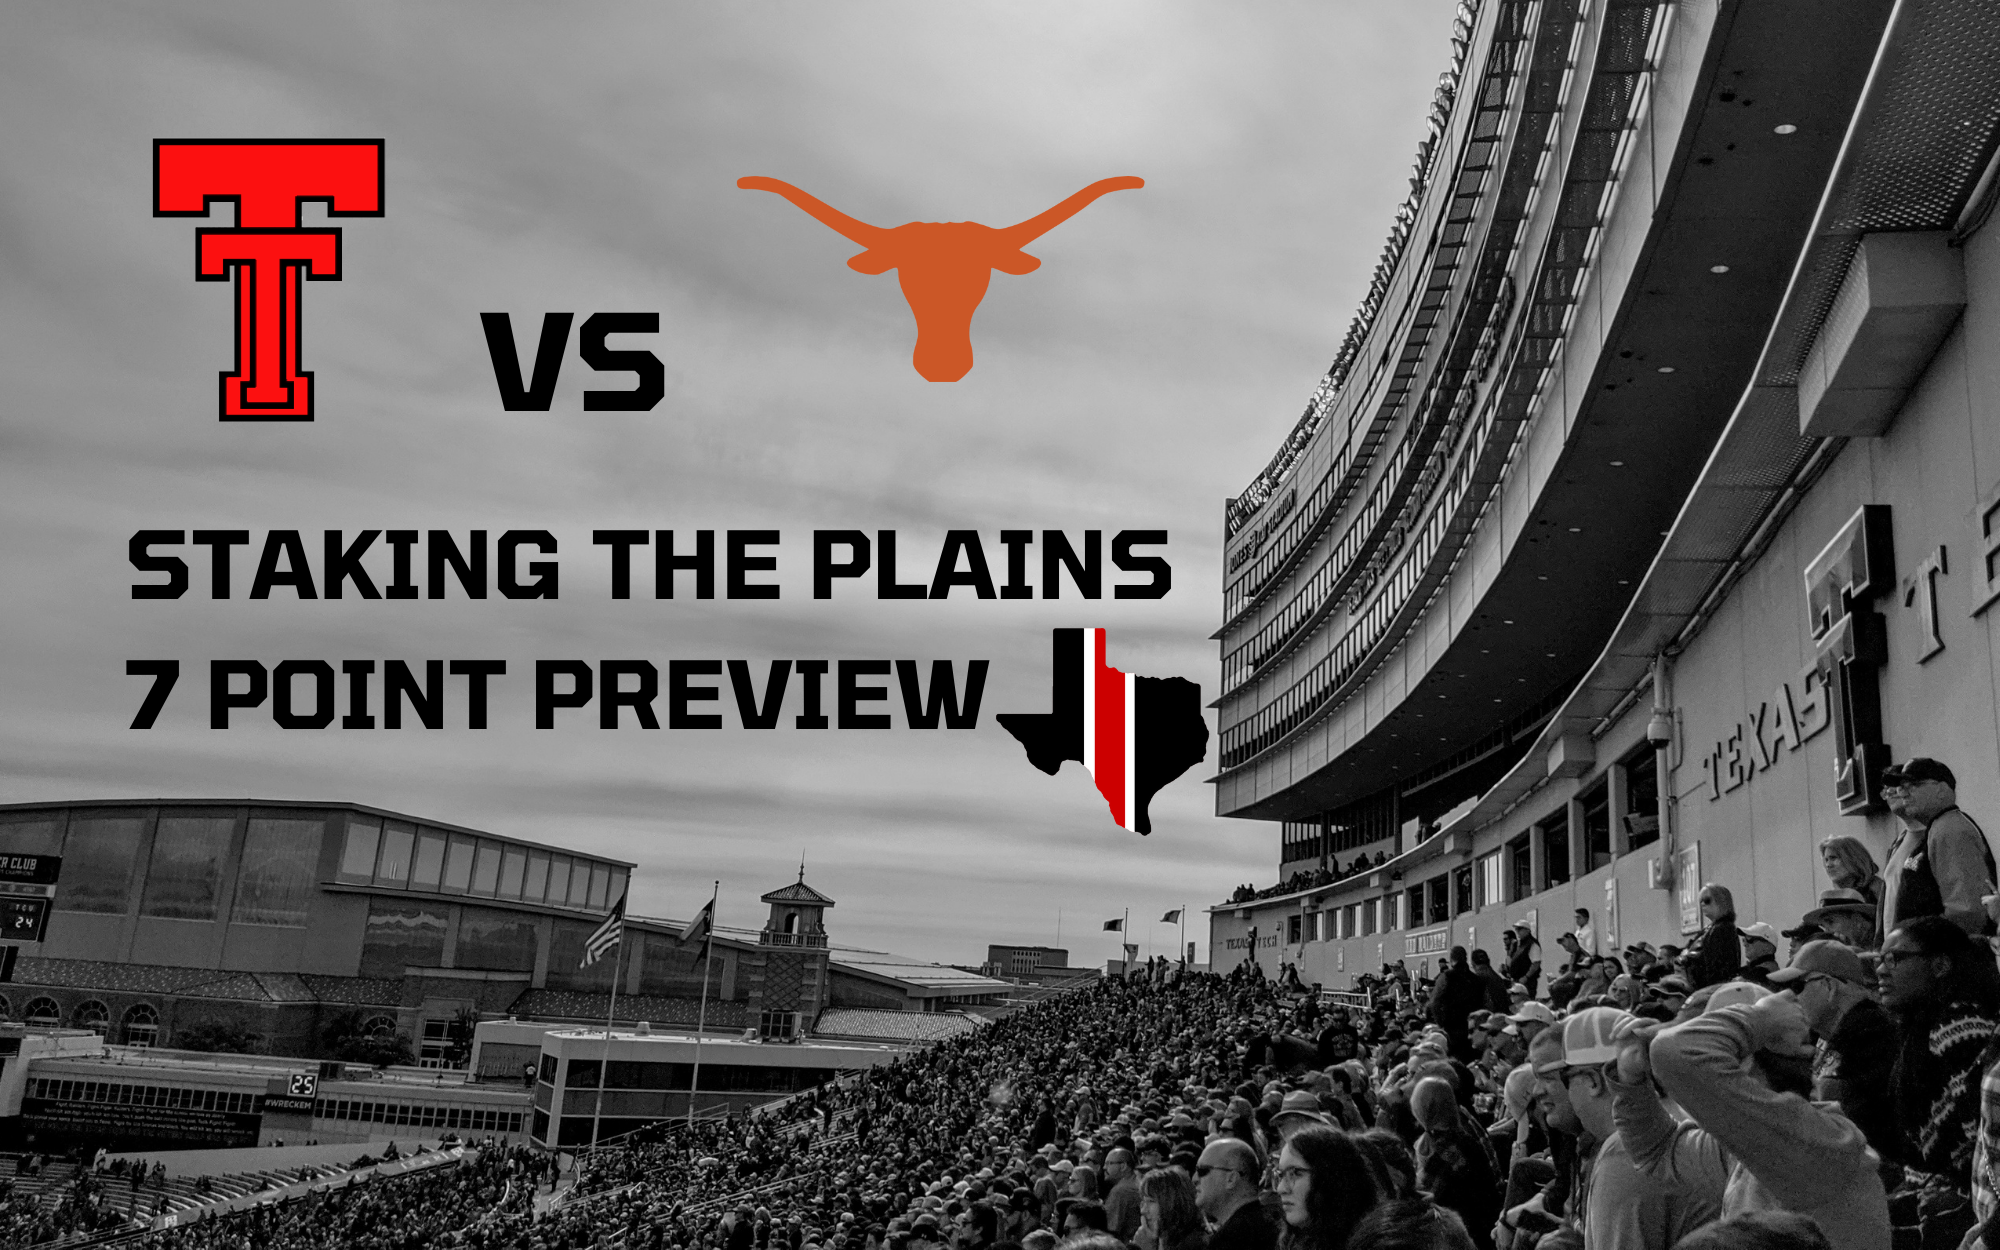 7 Point Preview: Texas Tech vs. Texas